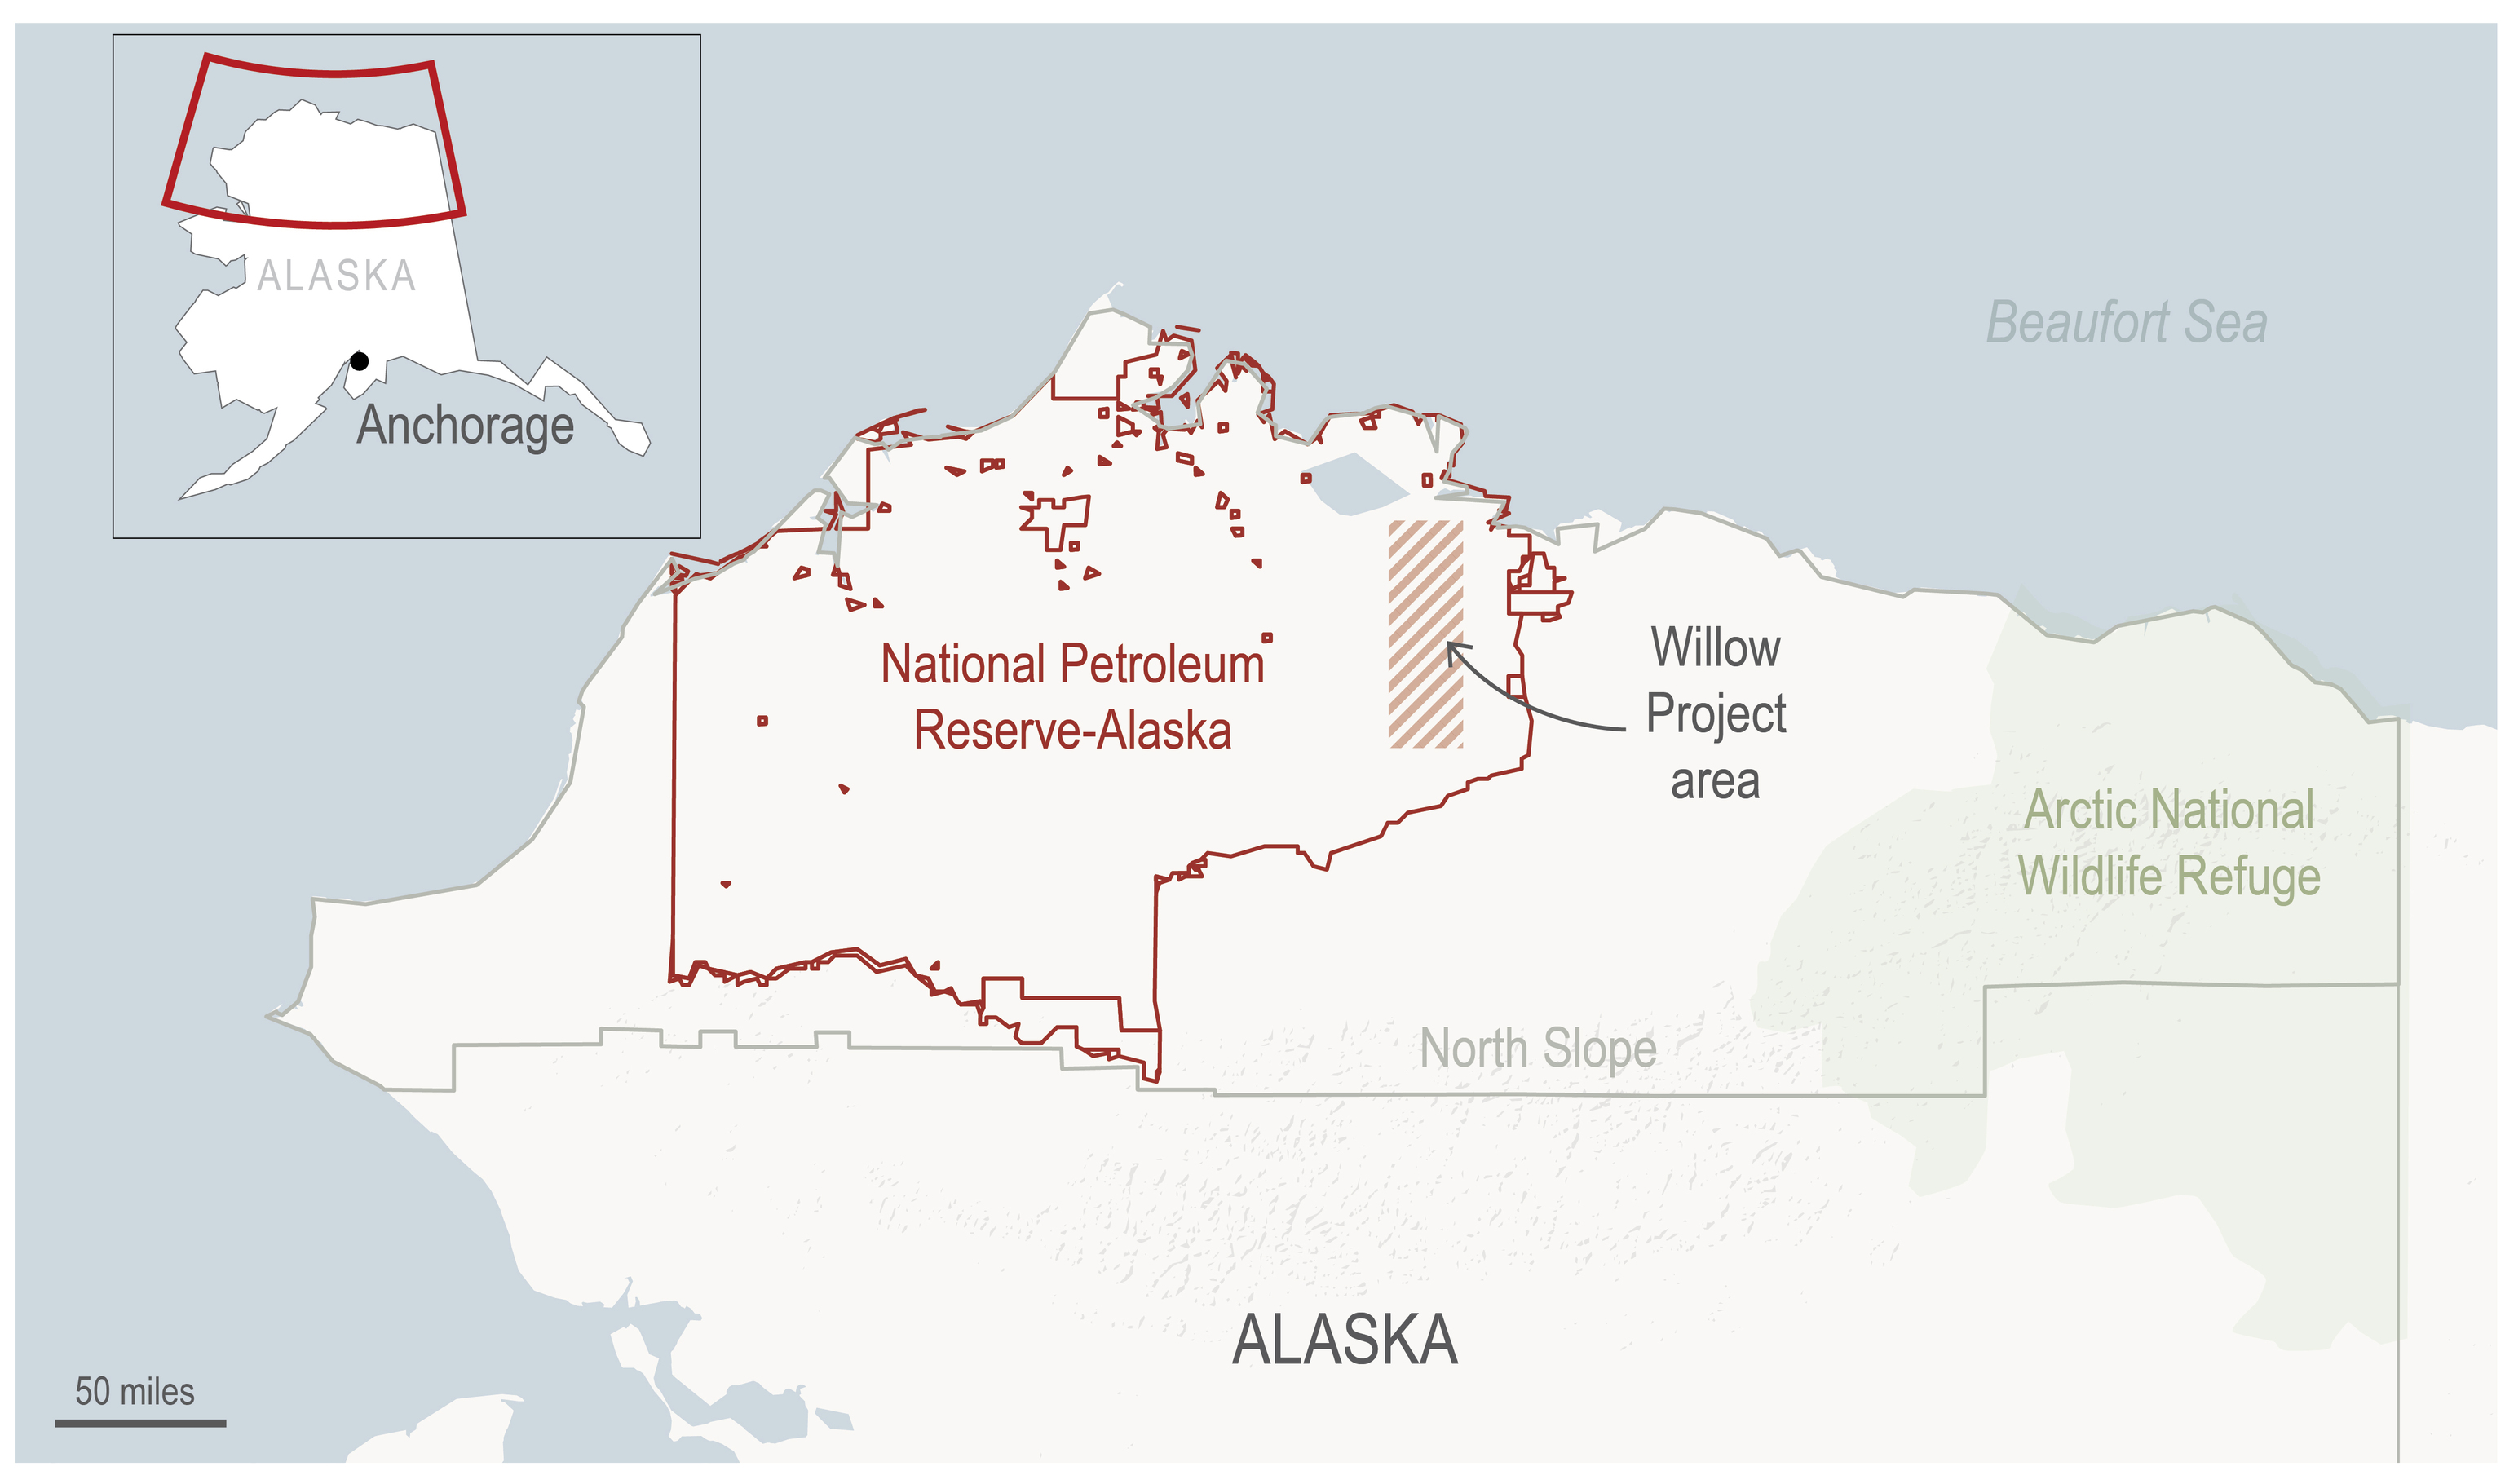 Mapa de Alaska en el que se muestra la zona en la que el proyecto Willow perforará crudo